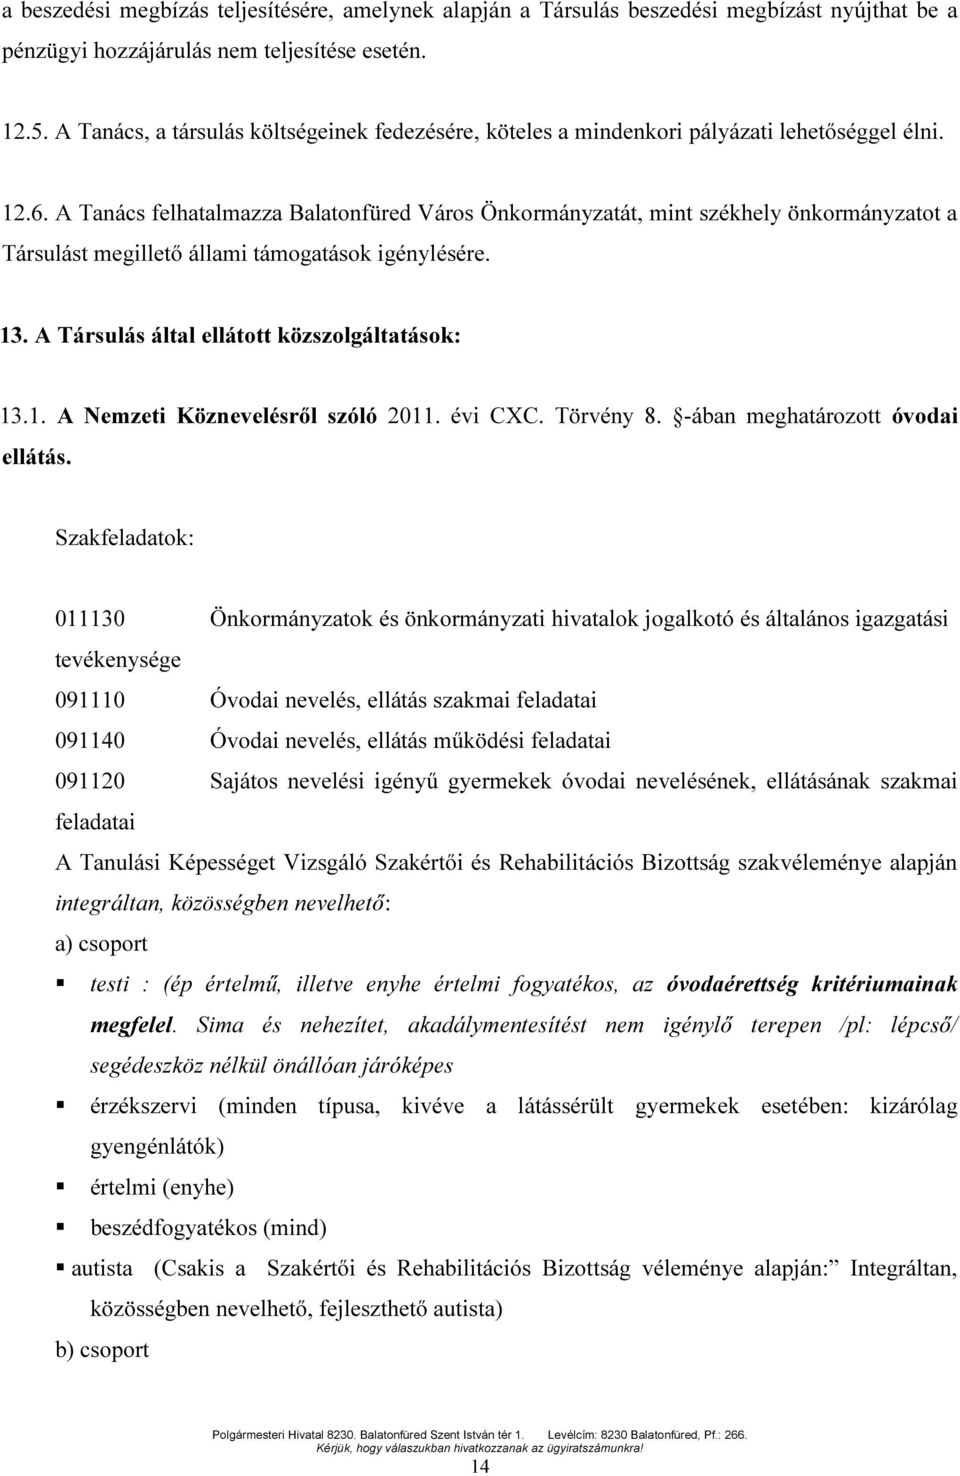 A Tanács felhatalmazza Balatonfüred Város Önkormányzatát, mint székhely önkormányzatot a Társulást megillető állami támogatások igénylésére. 13. A Társulás által ellátott közszolgáltatások: 13.1. A Nemzeti Köznevelésről szóló 2011.